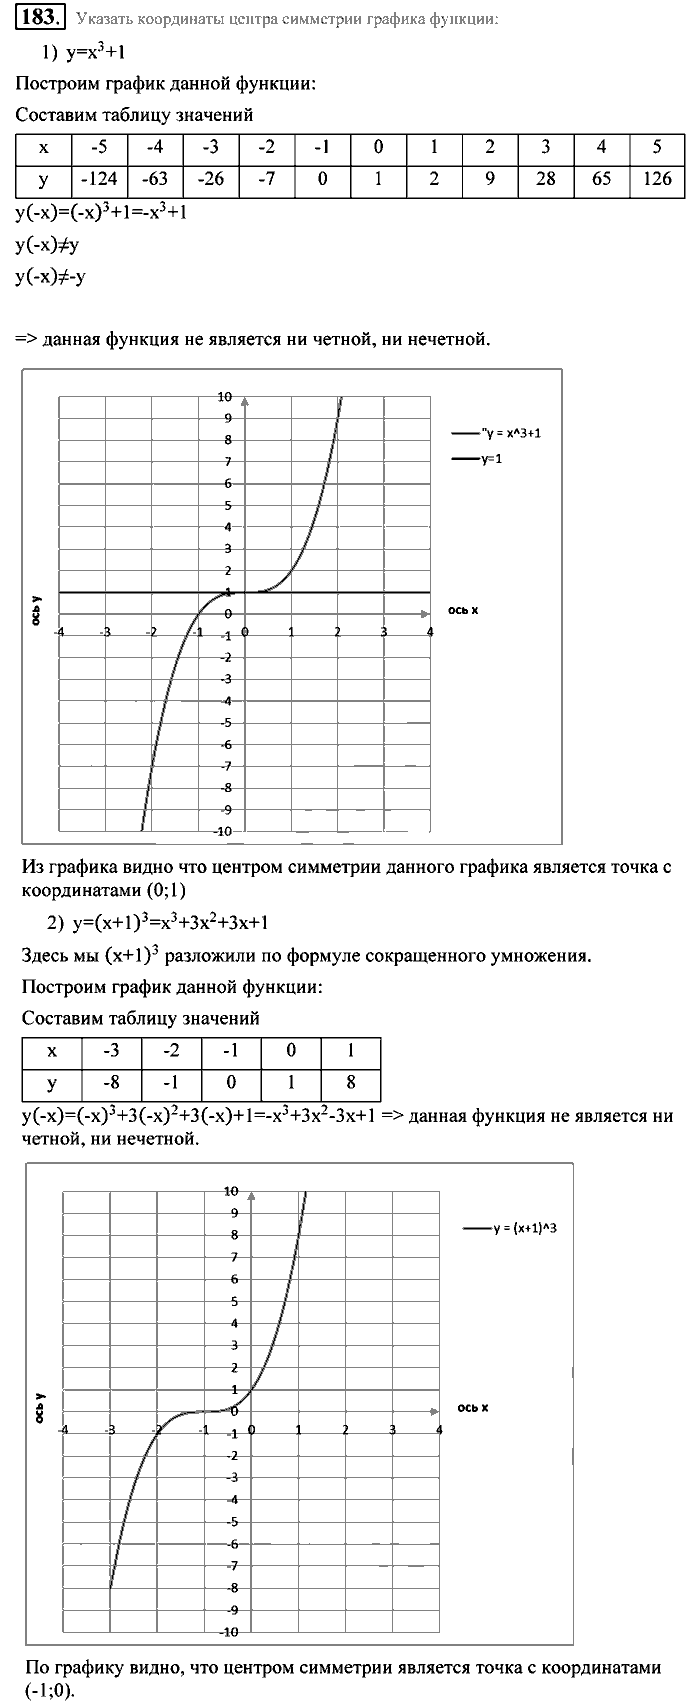 Алгебра, 9 класс, Алимов, Колягин, 2001, Проверь себя Задание: 183